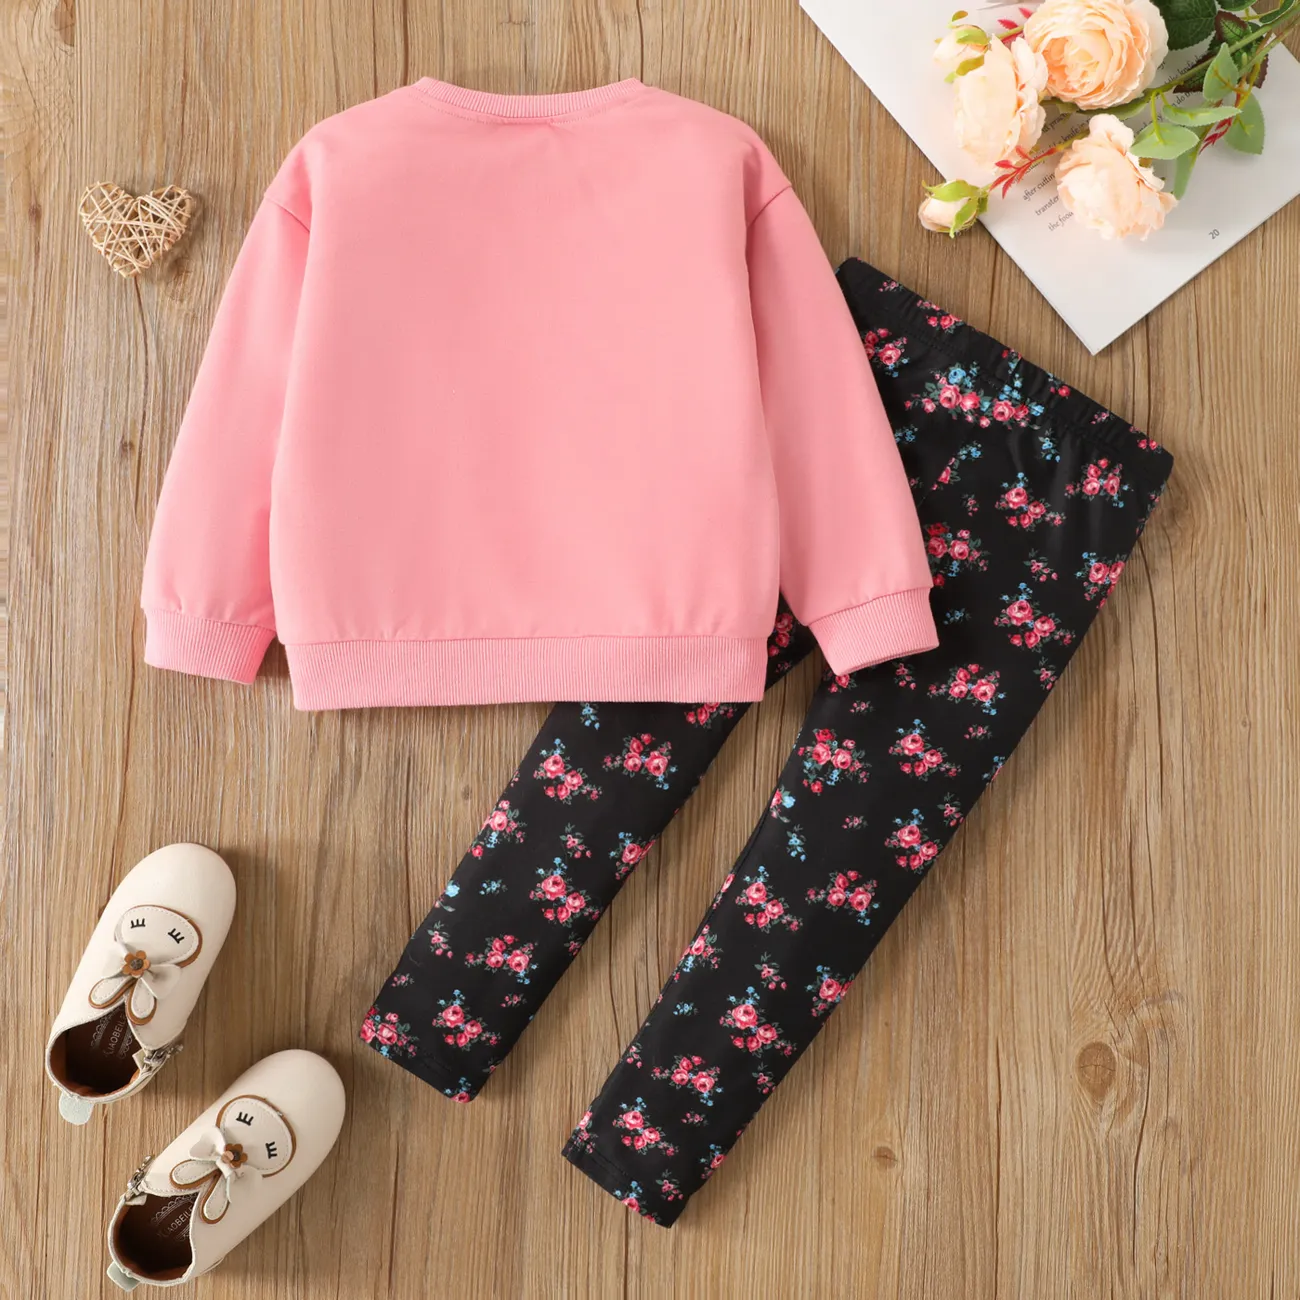 2pcs Toddler Girl Cute Rabbit Print Bowknot Design Sweatshirt and Floral Print Leggings Set Dark Pink big image 1